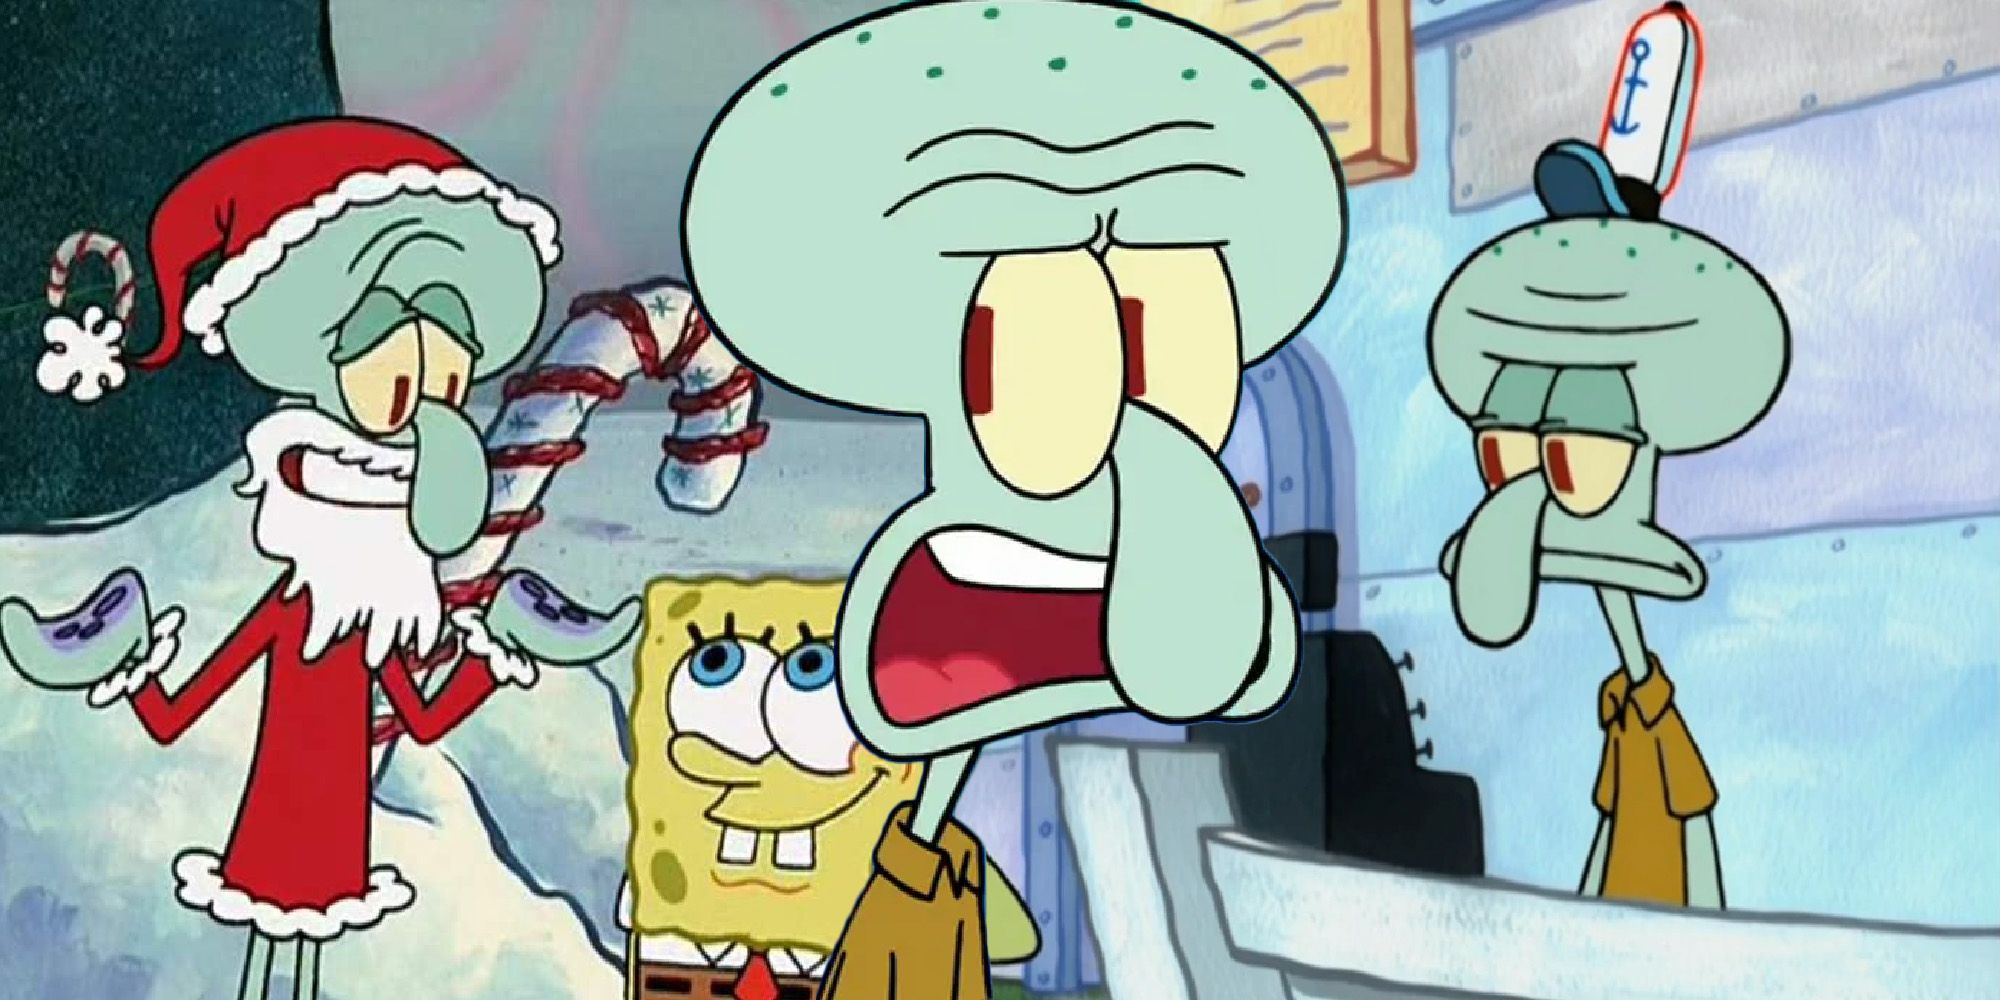 spongebob squarepants squidward